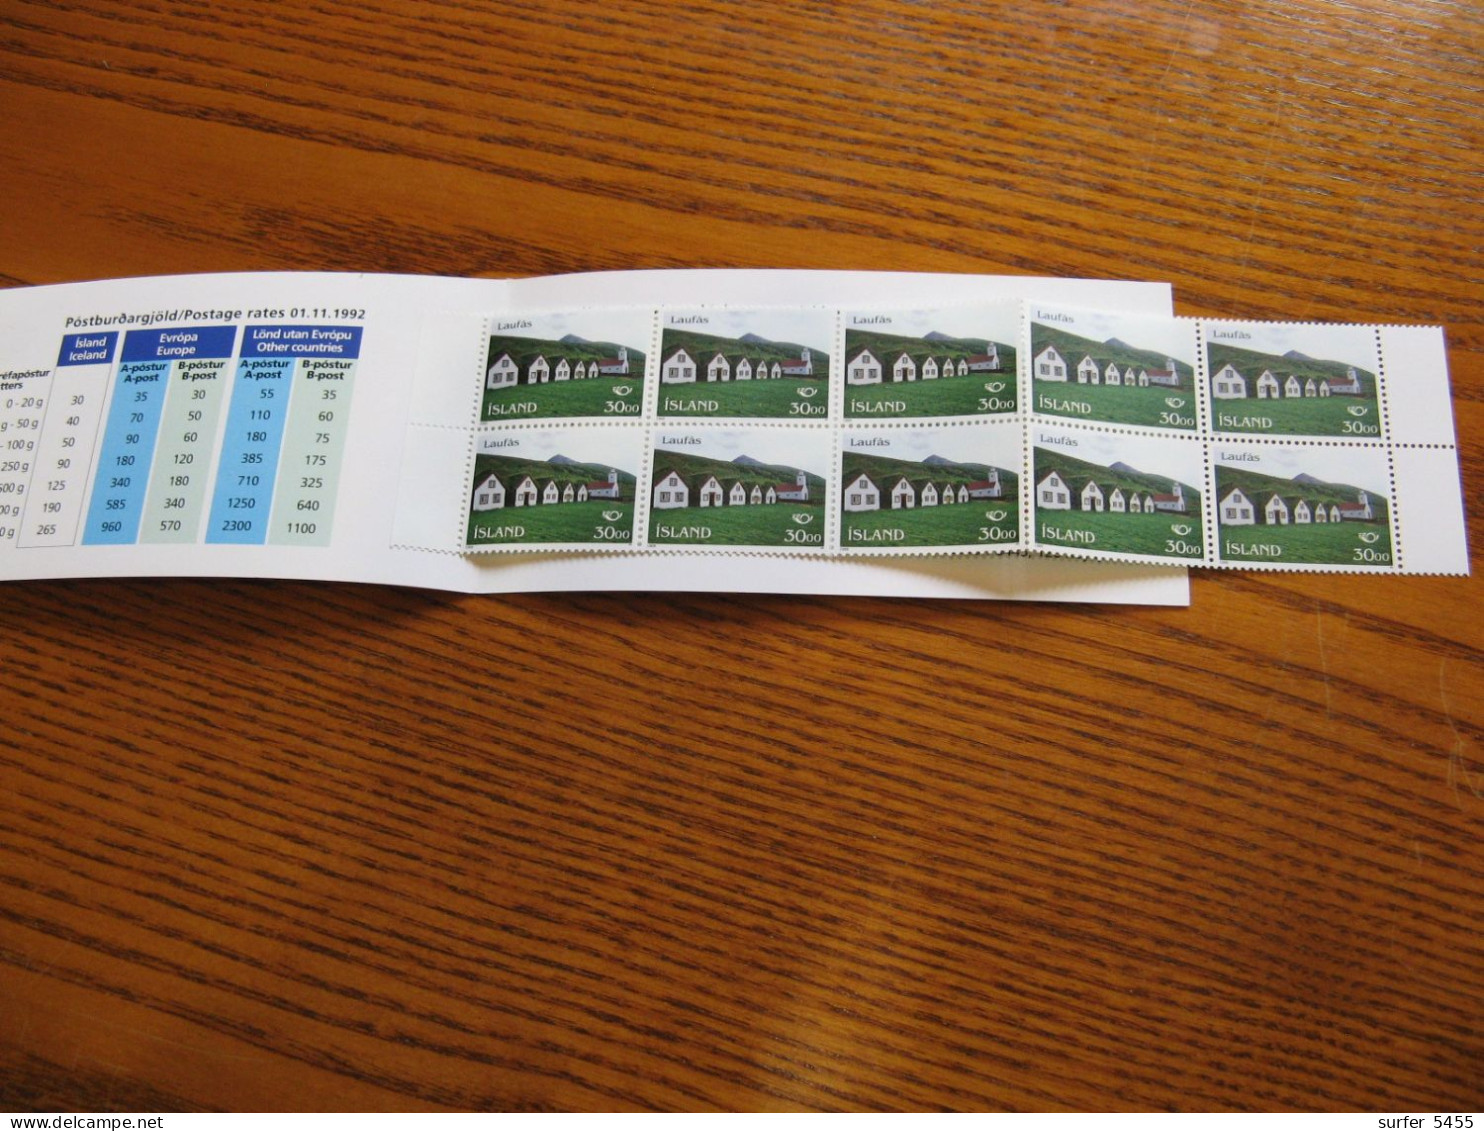 ISLANDE- CARNET N° 779  NEUF** LUXE - MNH - COTE YVERT 2012 : 12,50 EUROS - Unused Stamps